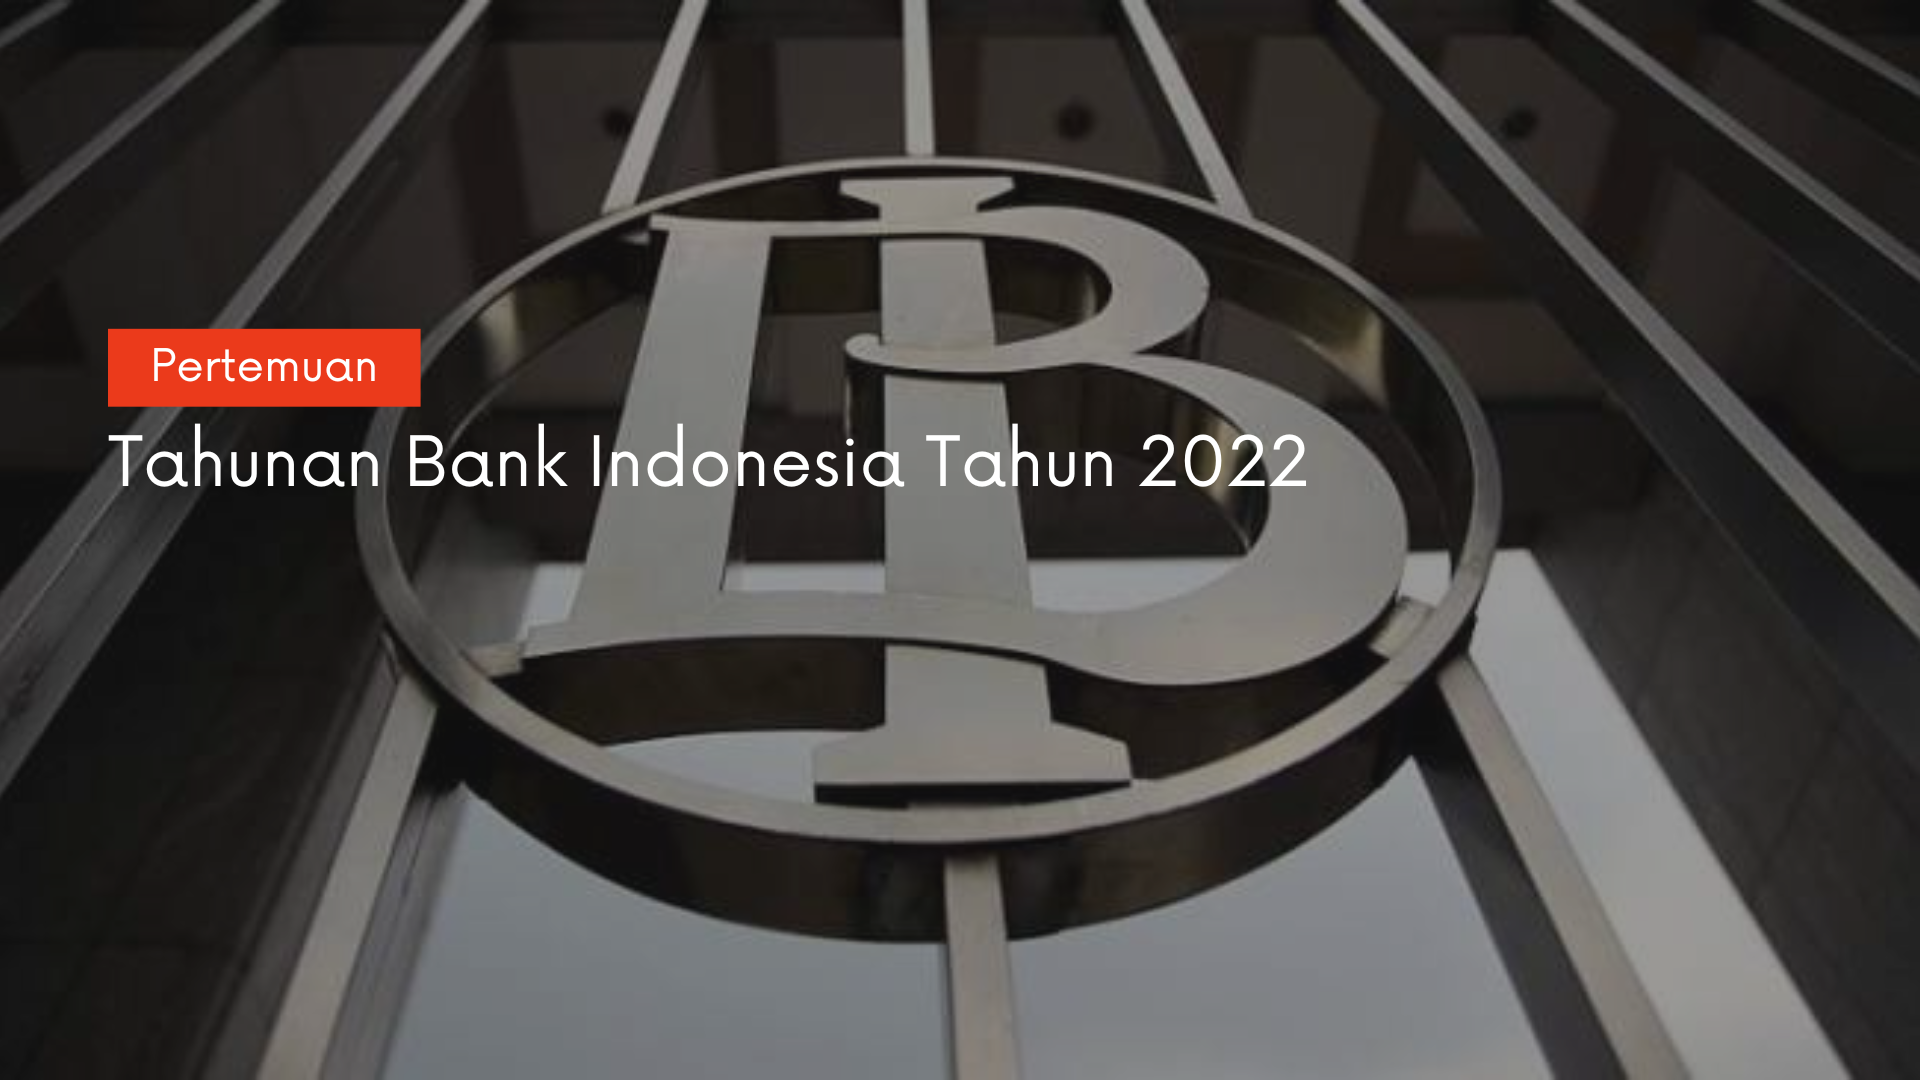 PERTEMUAN TAHUNAN BANK INDONESIA (PTBI) TAHUN 2022